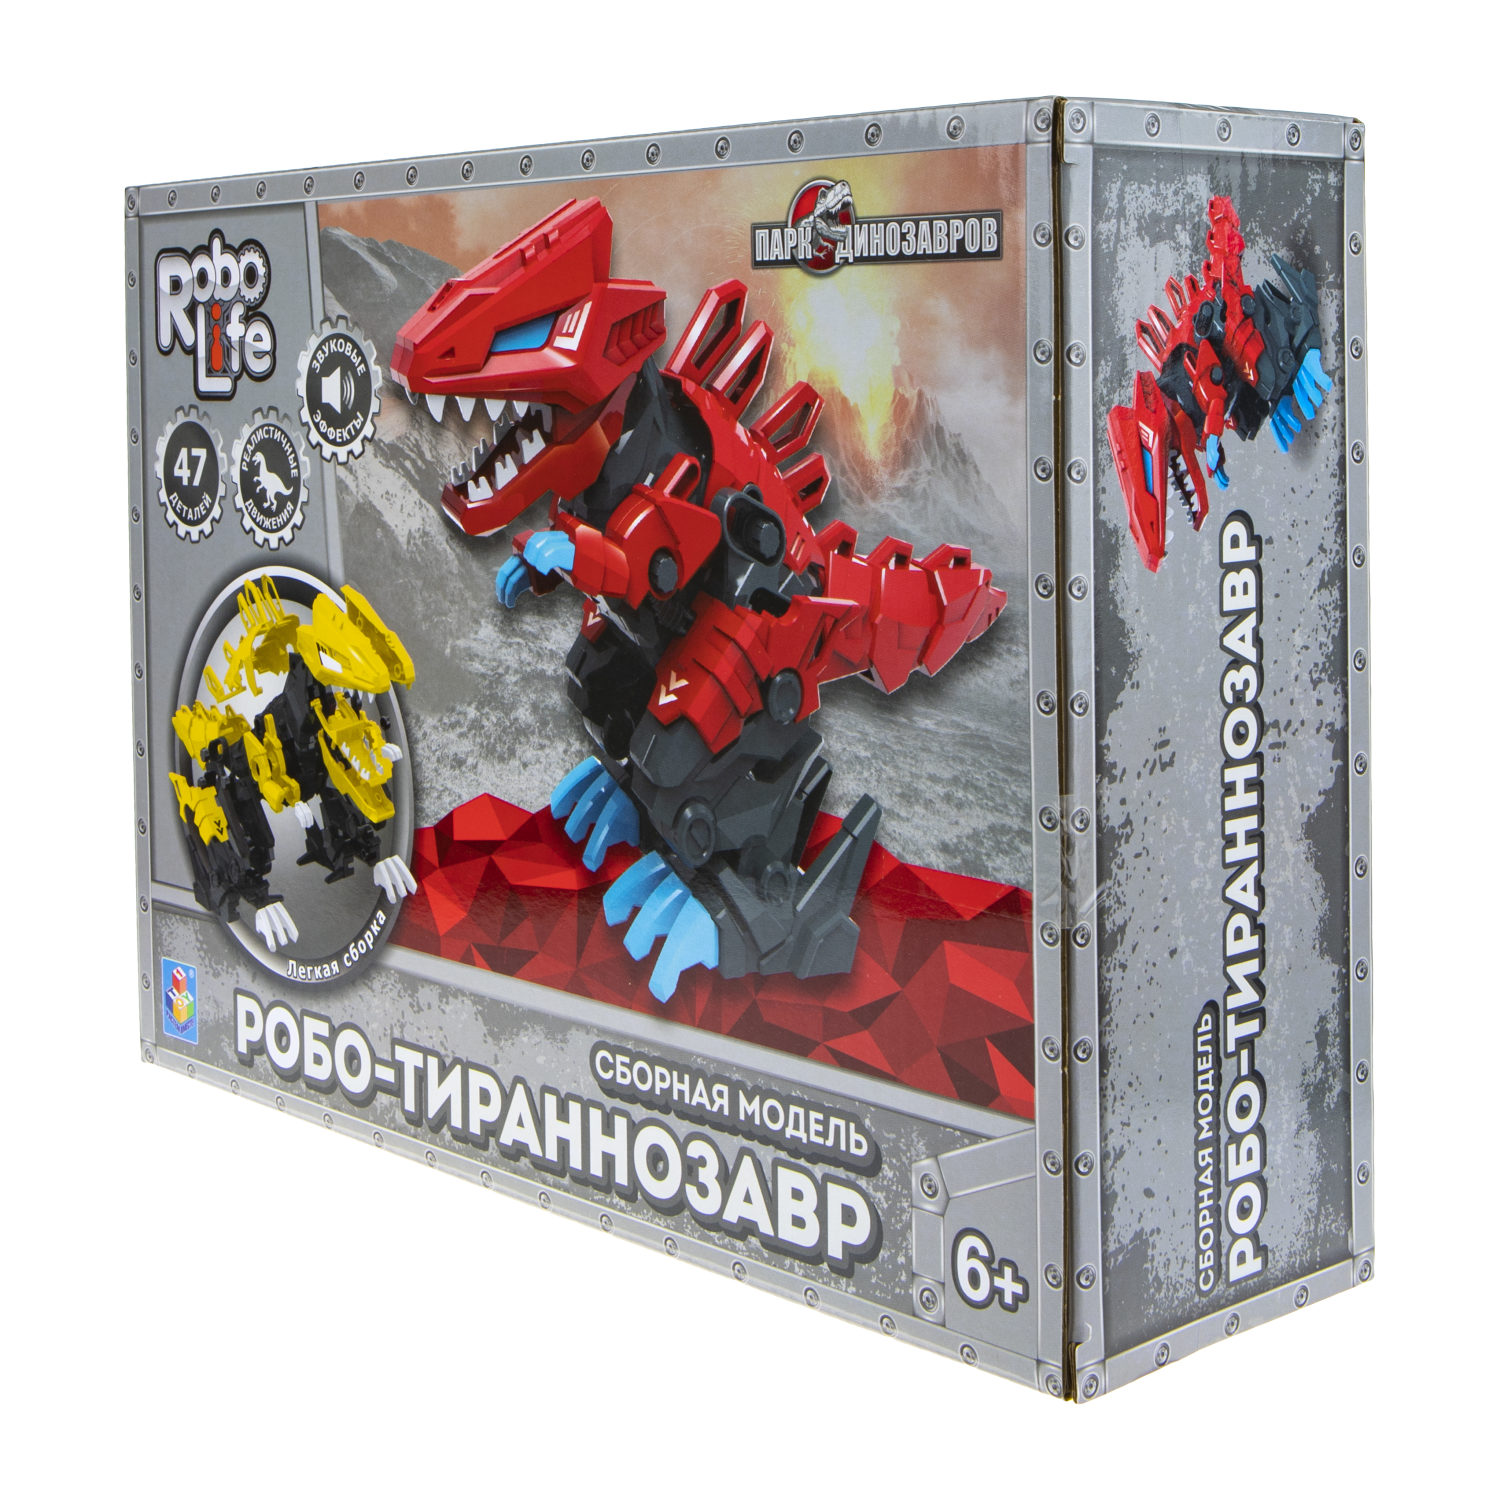 Сборная модель 1TOY RoboLife Робо-тираннозавр 47 деталей, красный